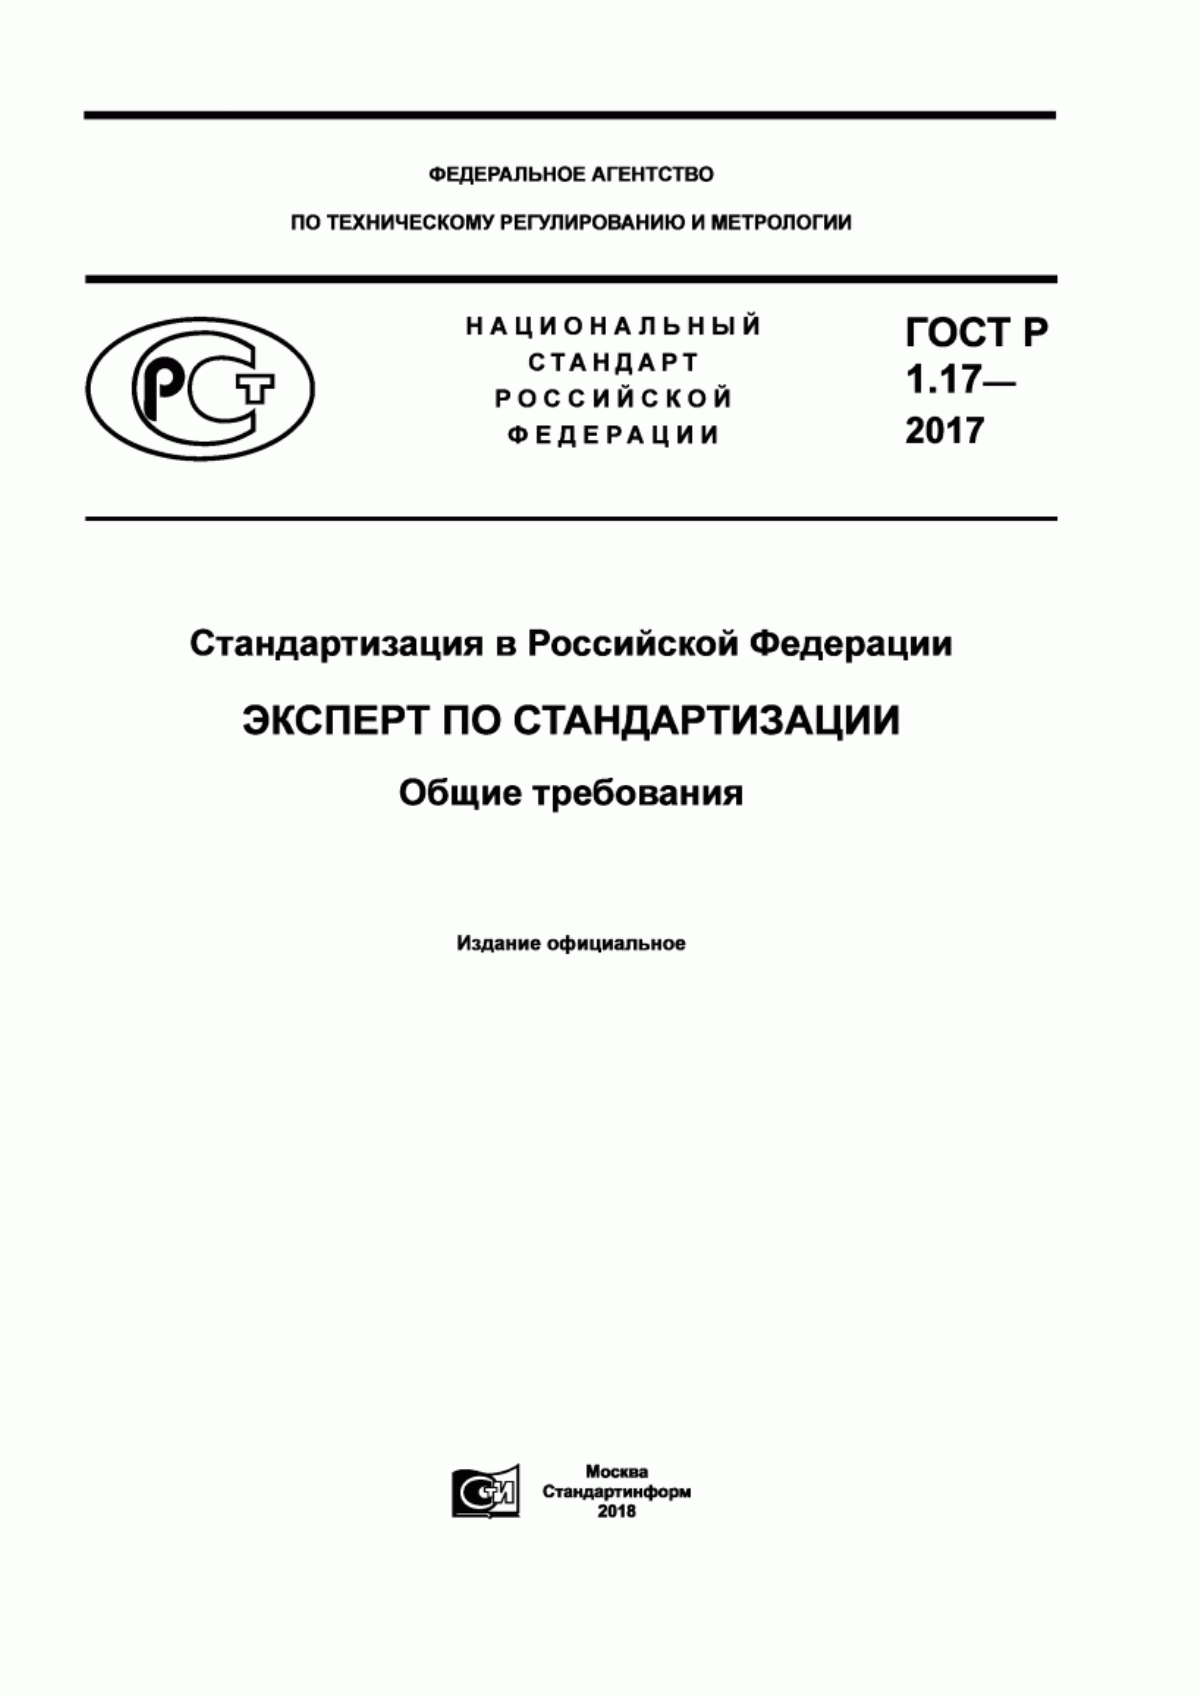 ГОСТ Р 1.17-2017 Стандартизация в Российской Федерации. Эксперт по стандартизации. Общие требования